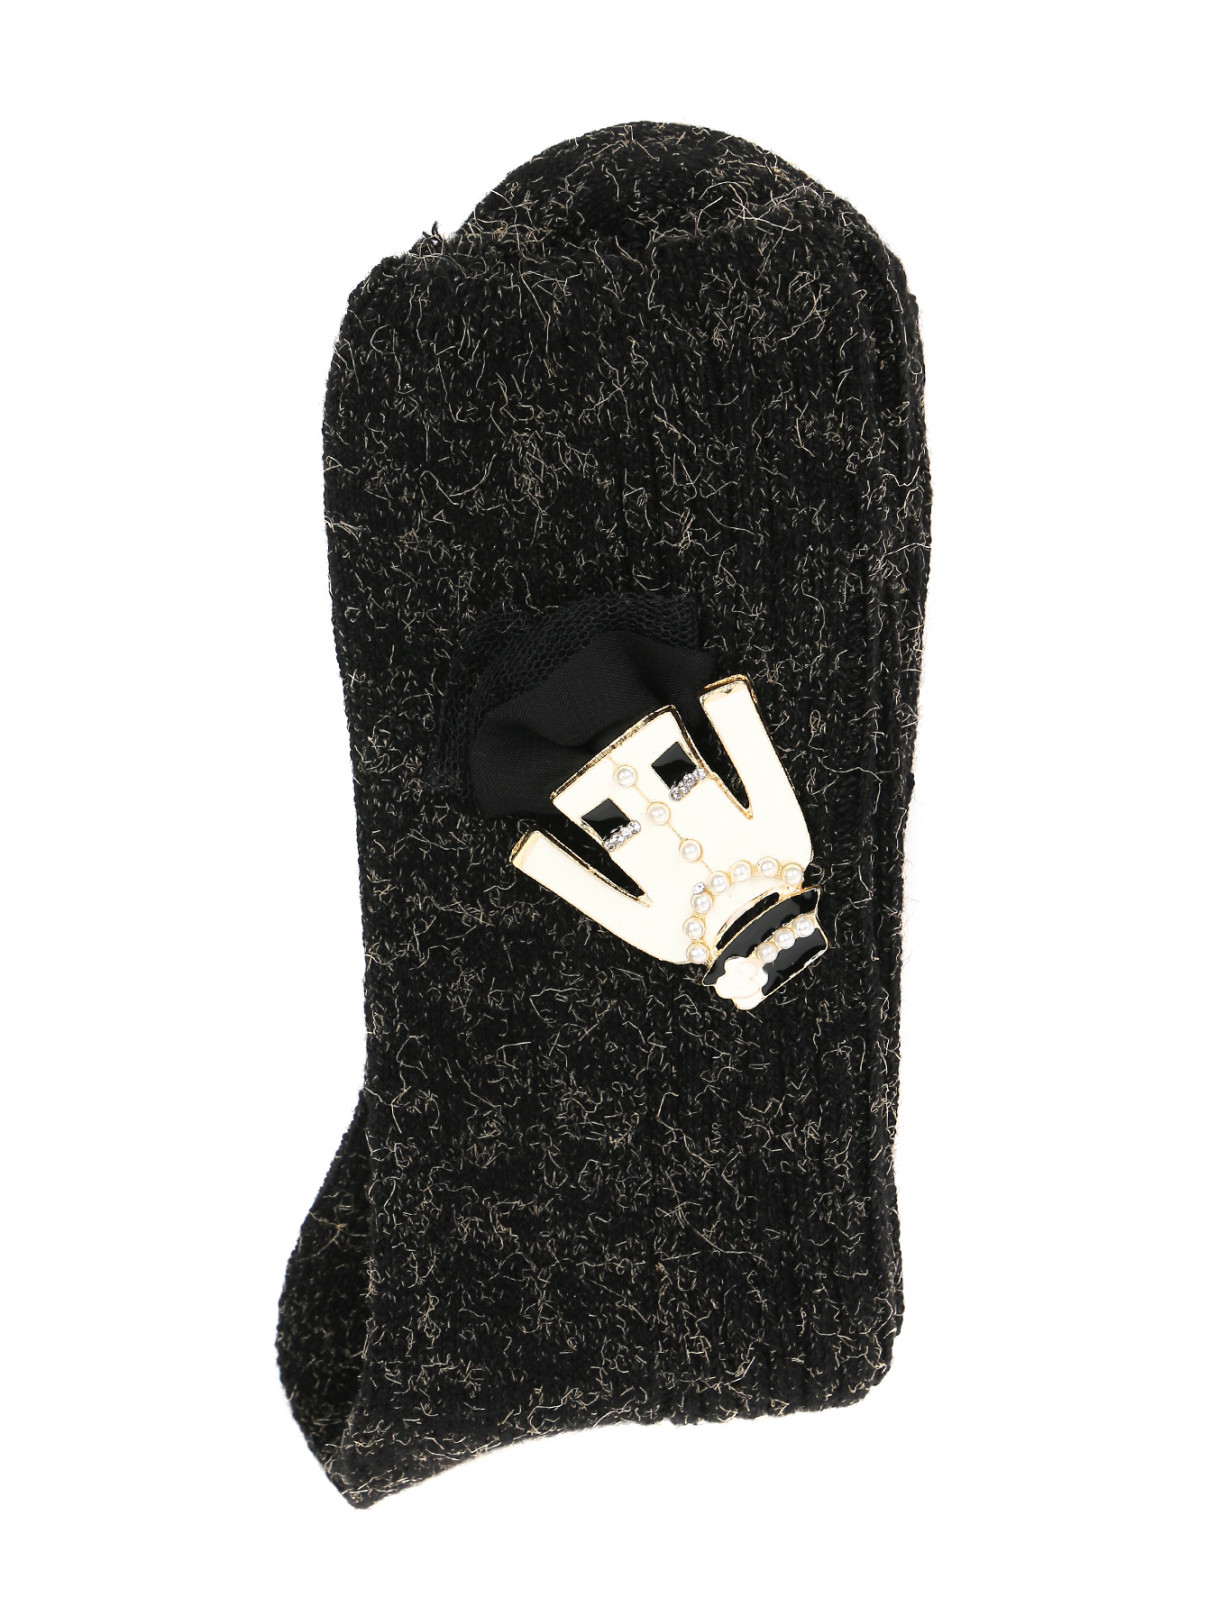 Носки из хлопка с аппликацией ALTO MILANO  –  Общий вид  – Цвет:  Черный